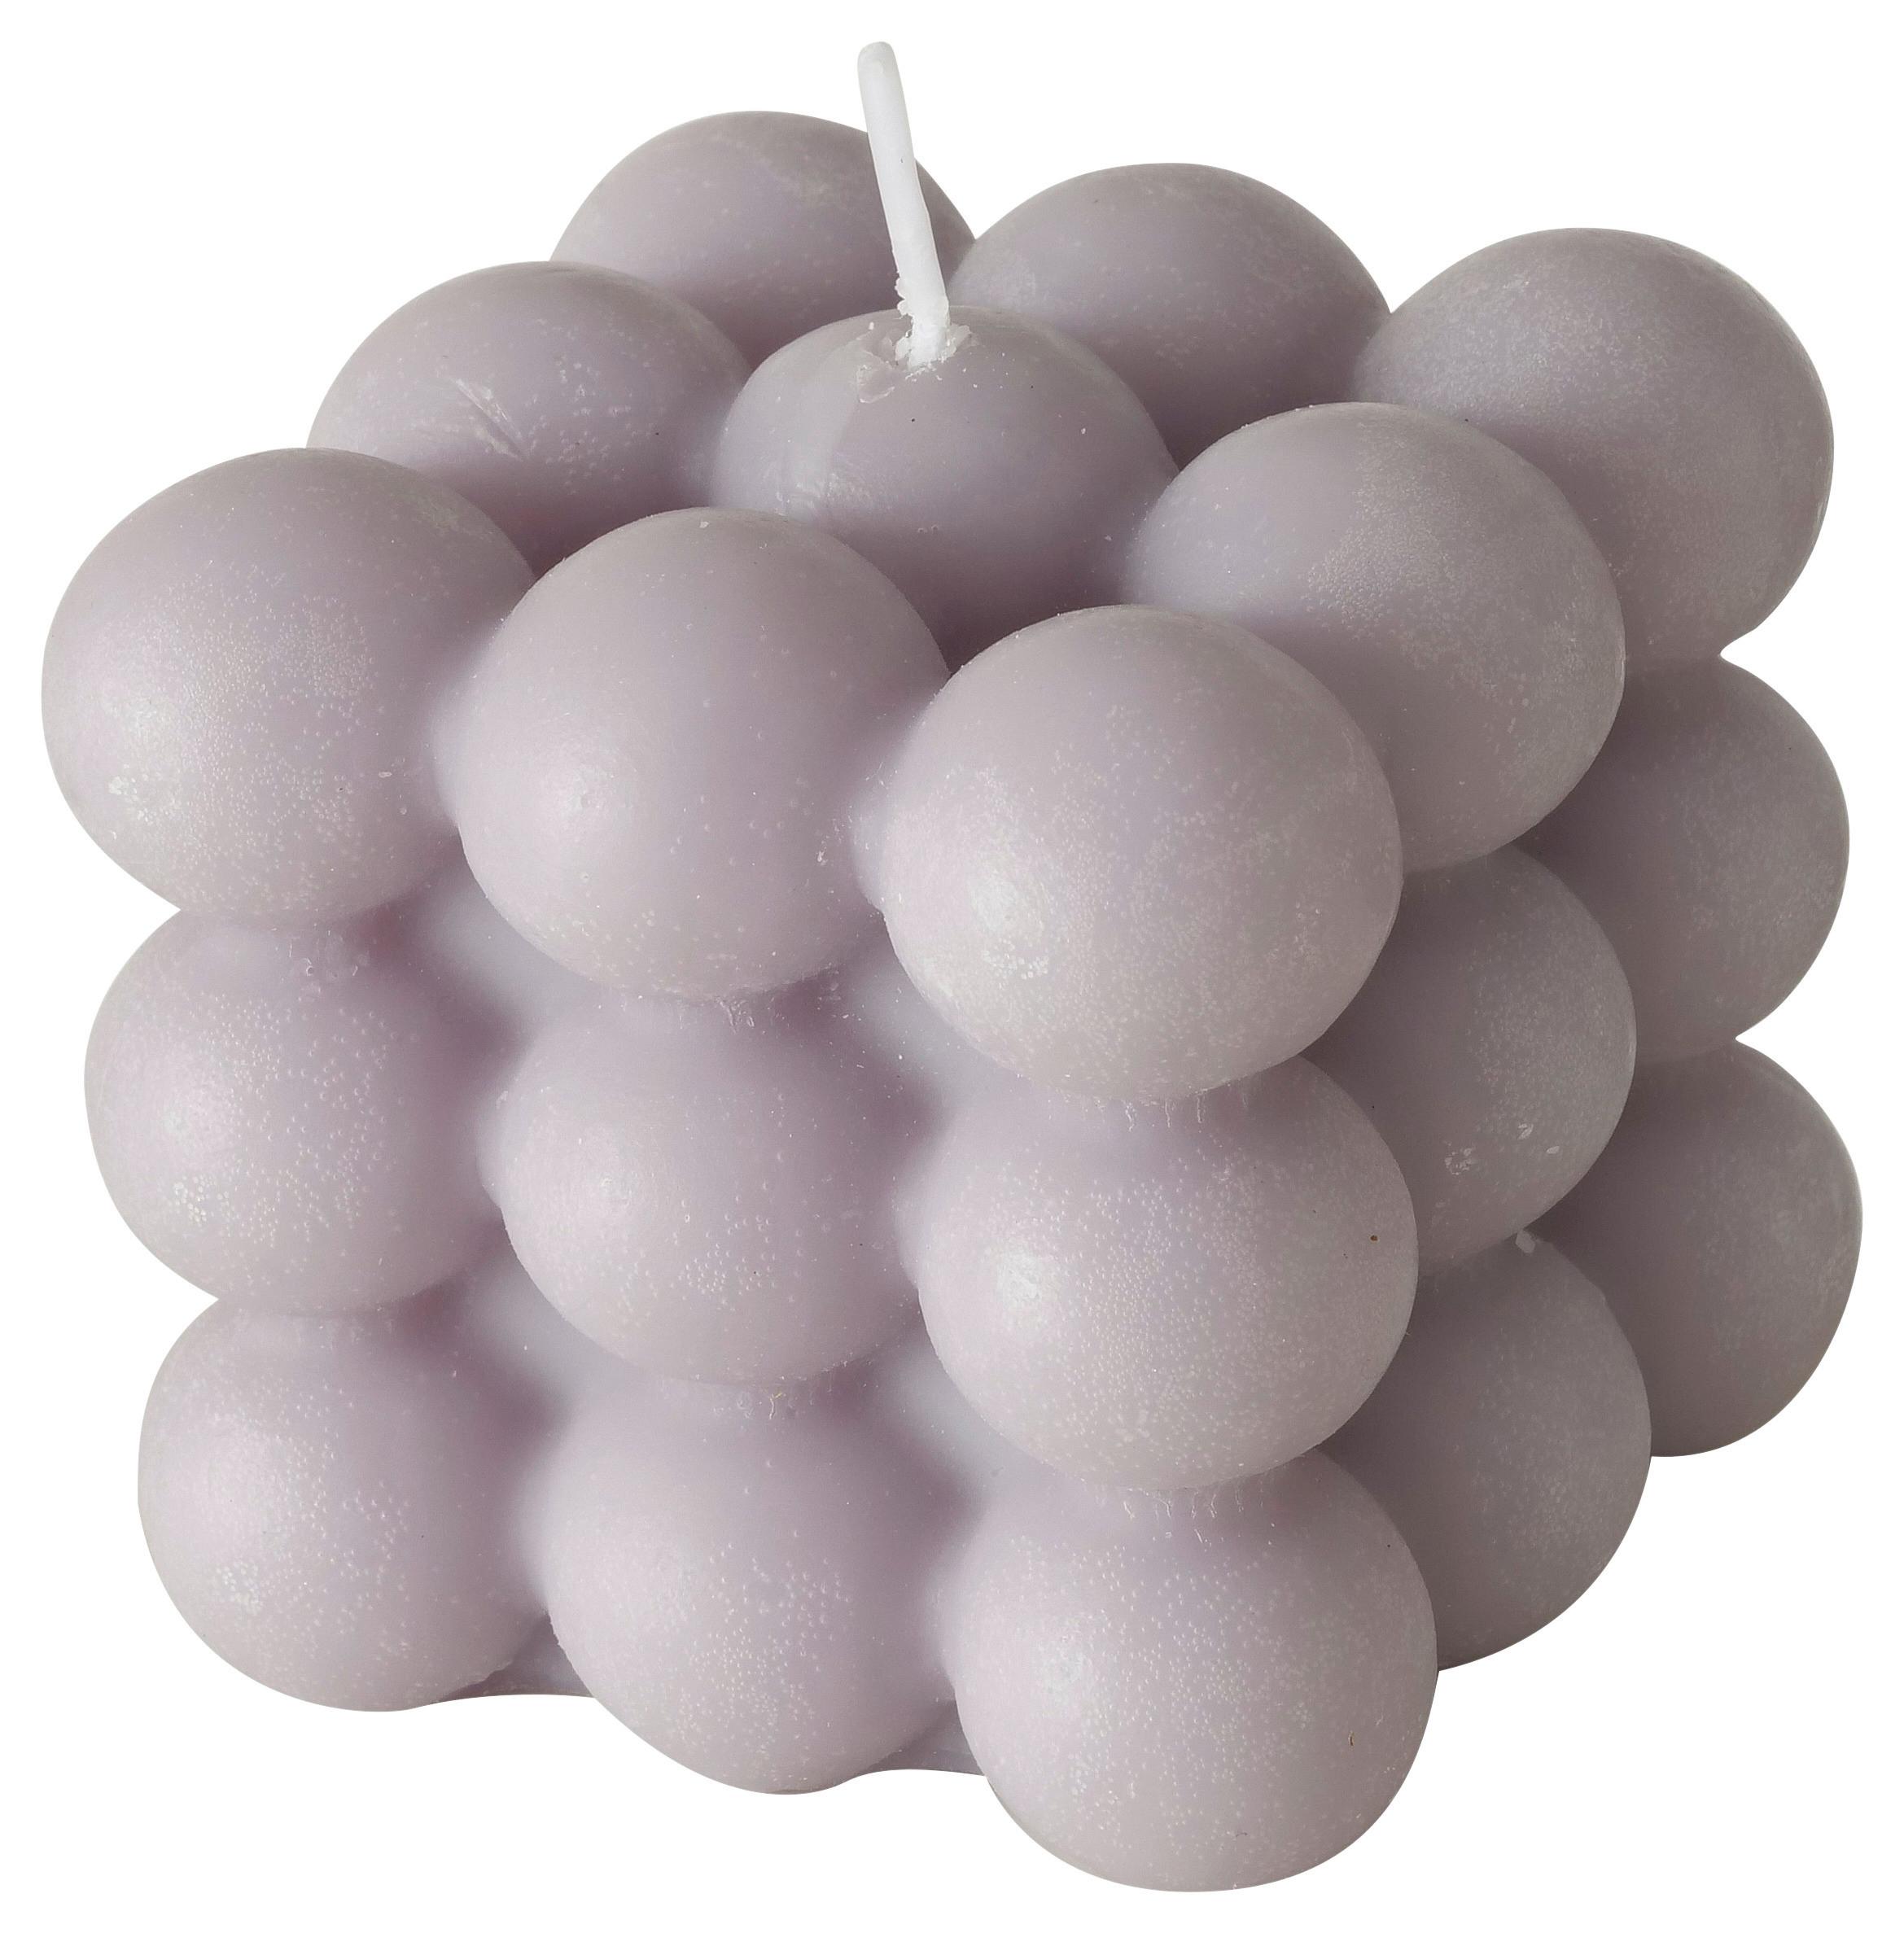 Svíčka Bubble Ii - šedá, Basics, přírodní materiály (5,8/6/5,8cm) - Modern Living